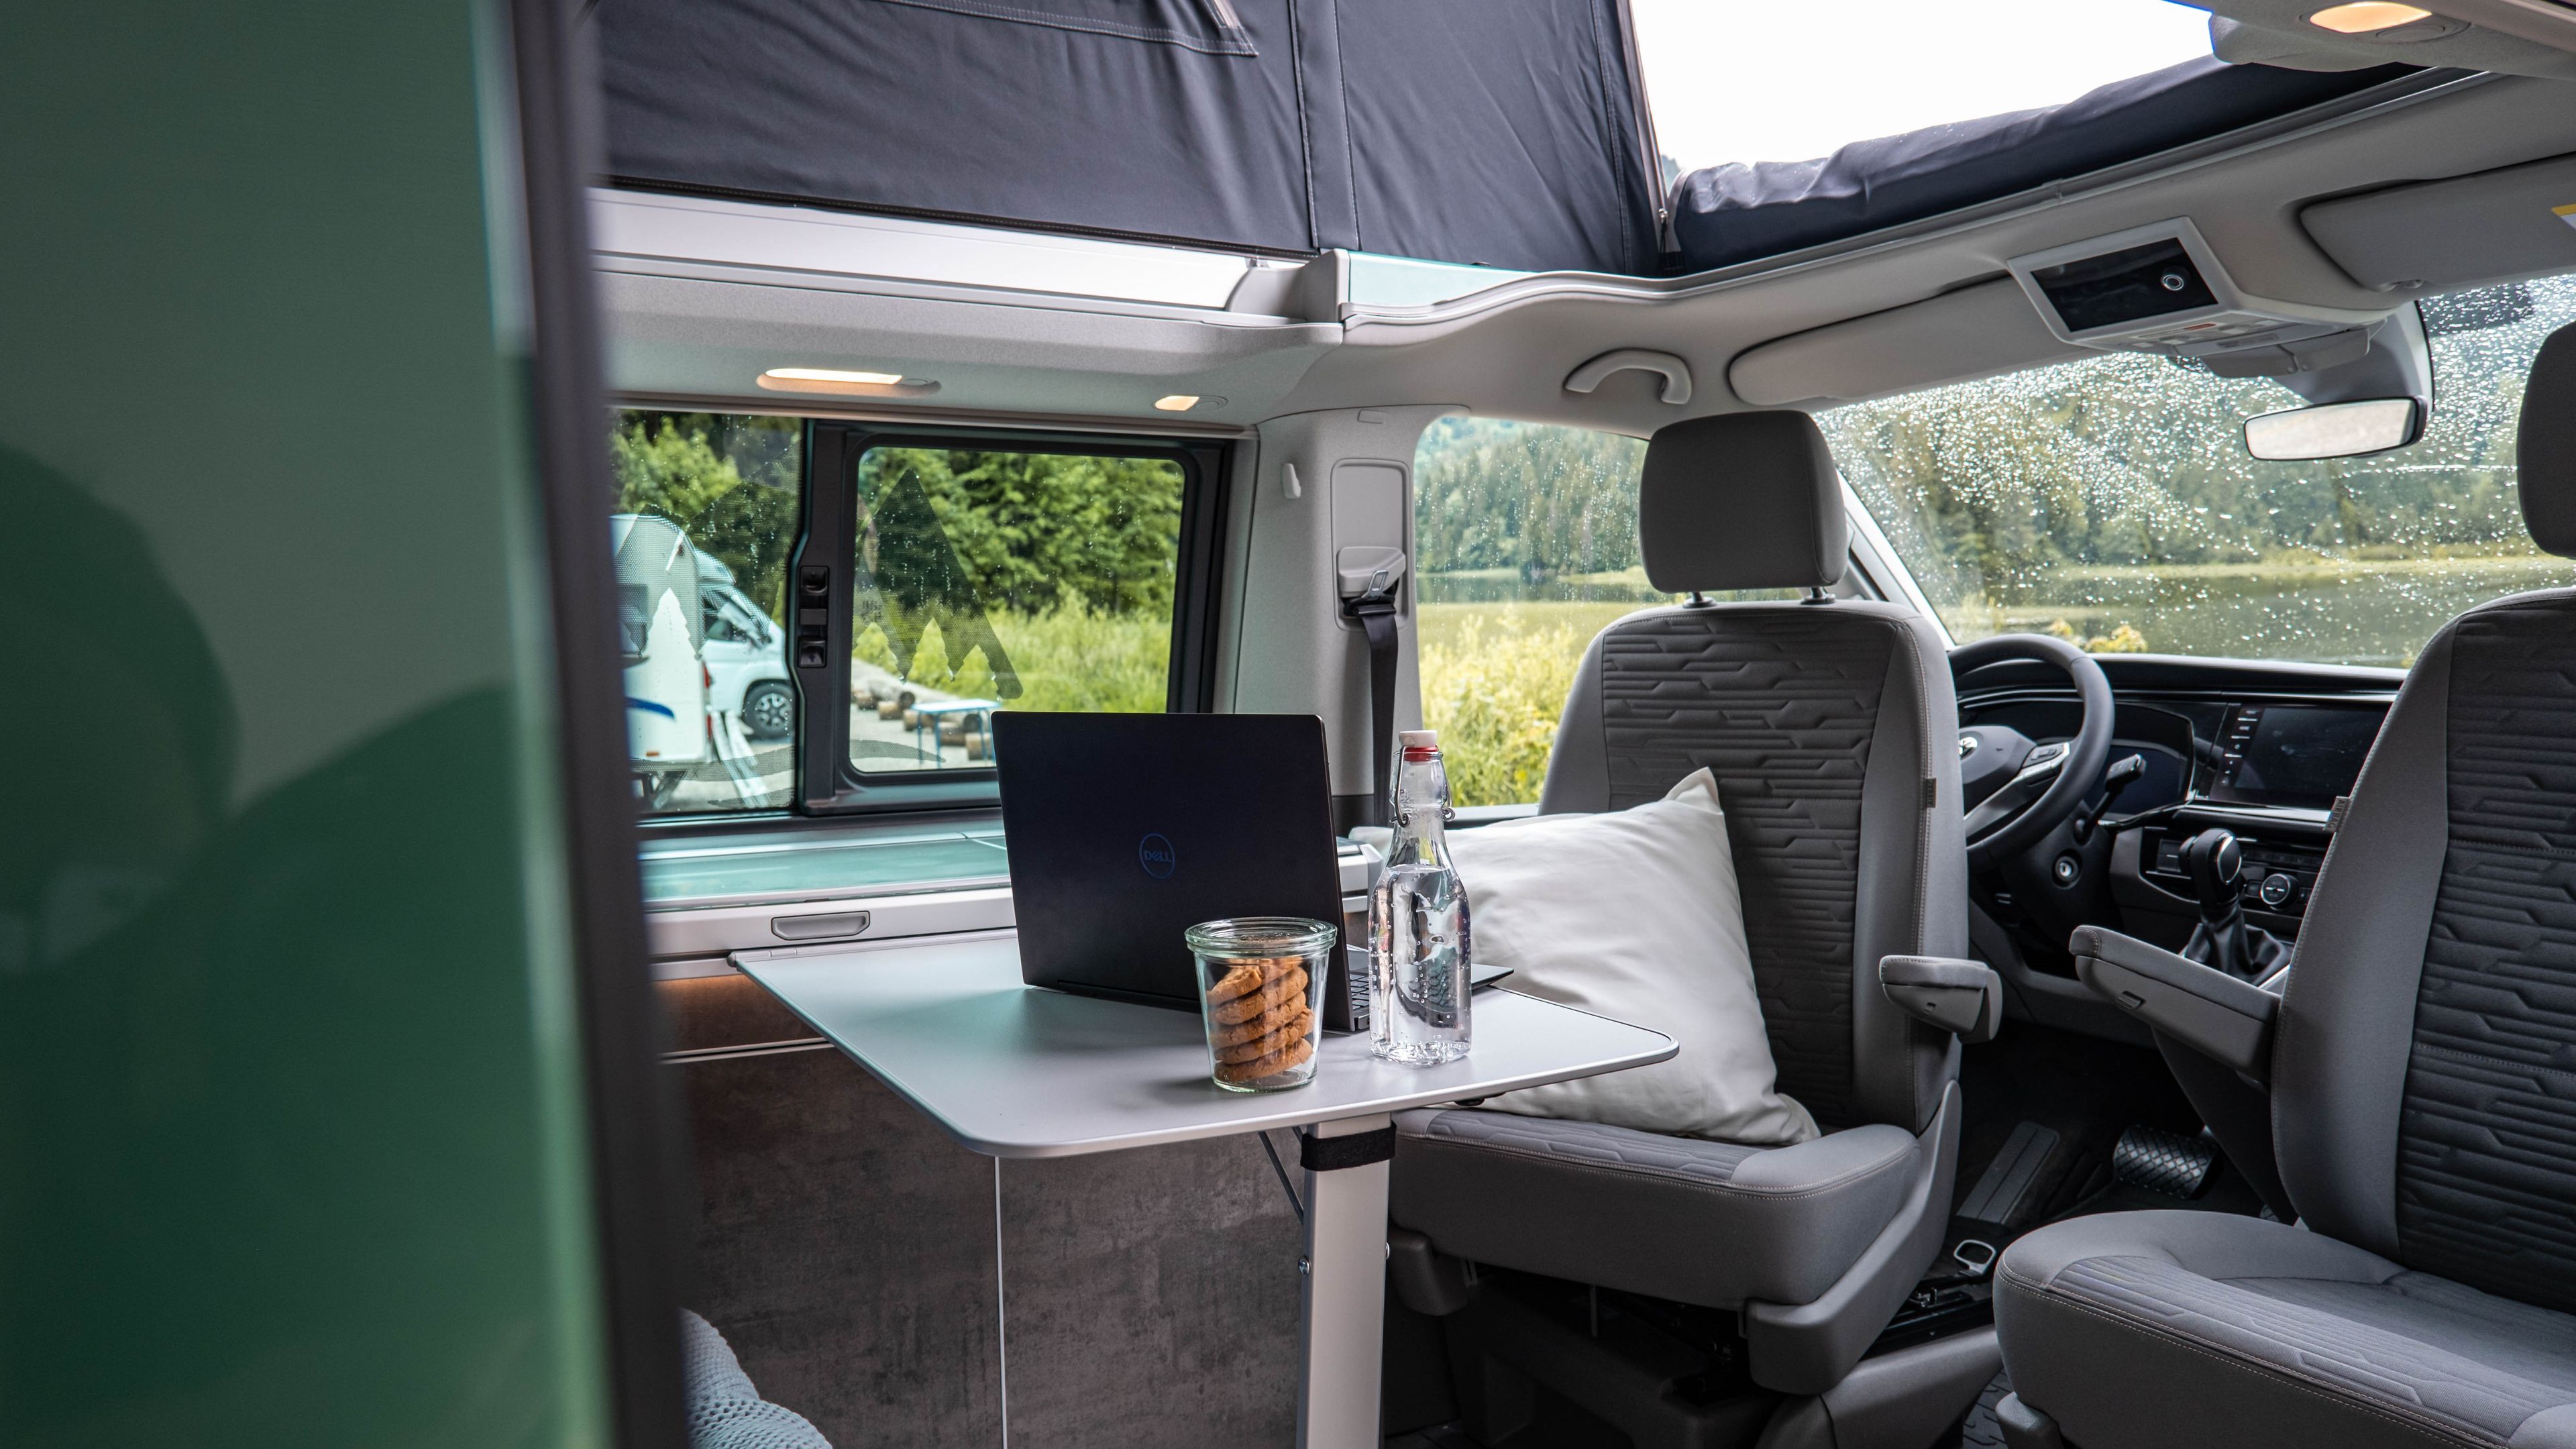 Arbeiten mit Laptop im Wohnmobil (VW Bulli): Viel Platz & Komfort